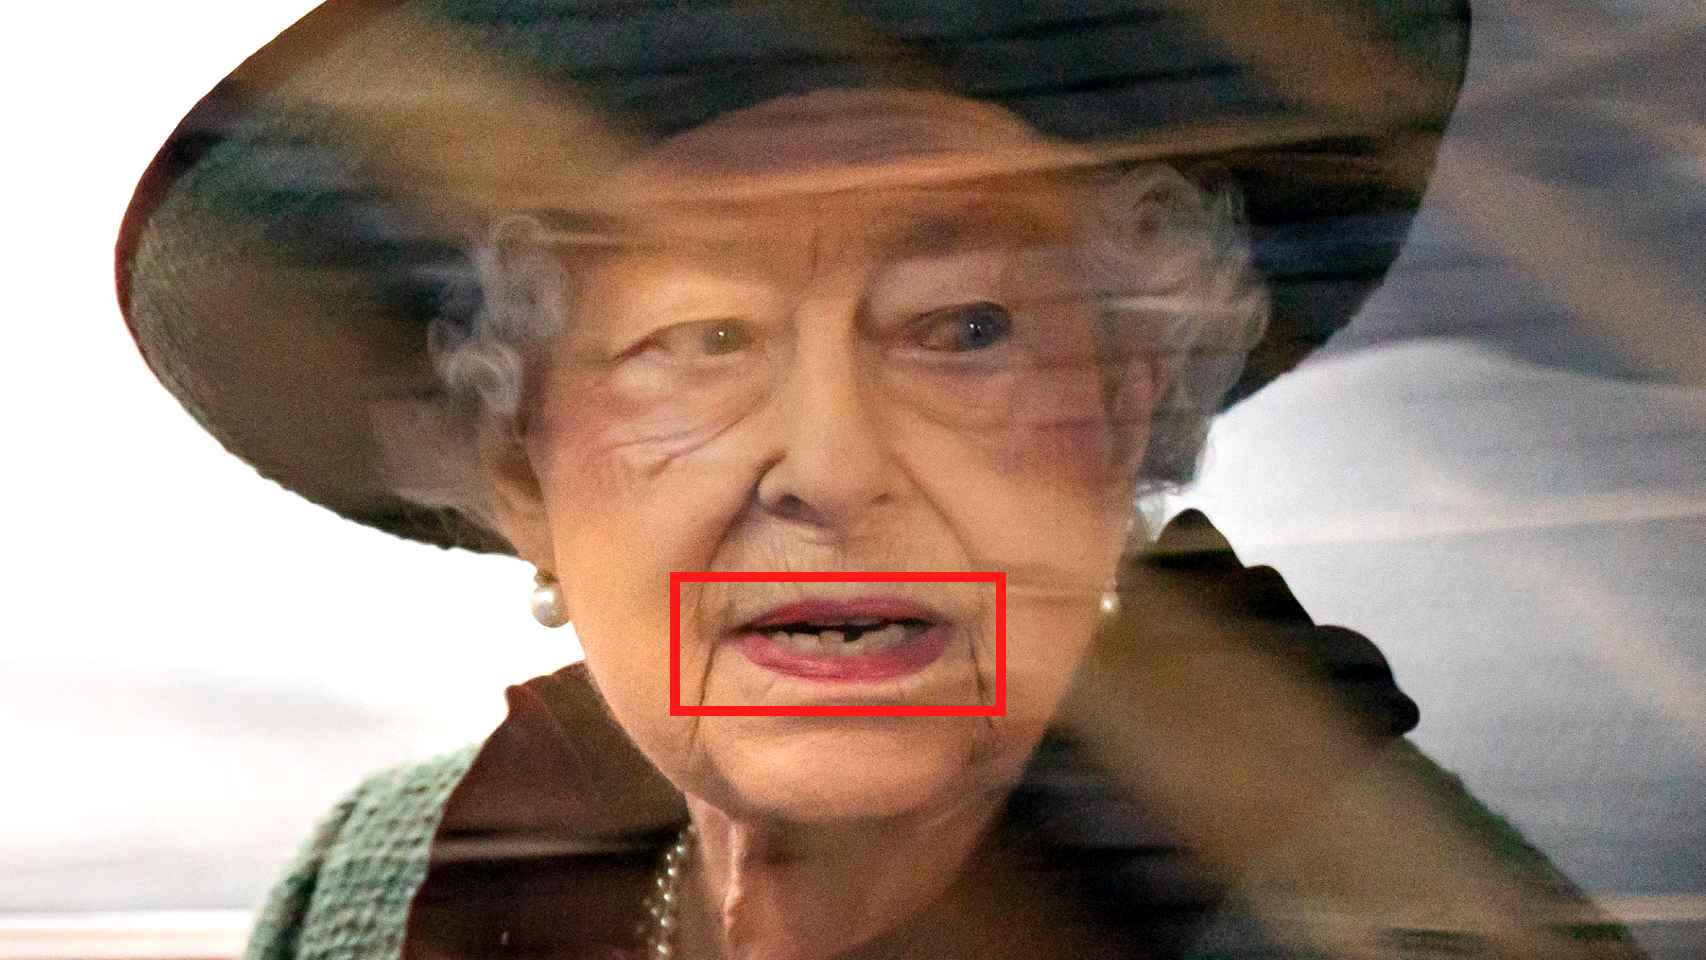 La Reina muestra un apiñamiento severo en la zona inferior de su dentadura.